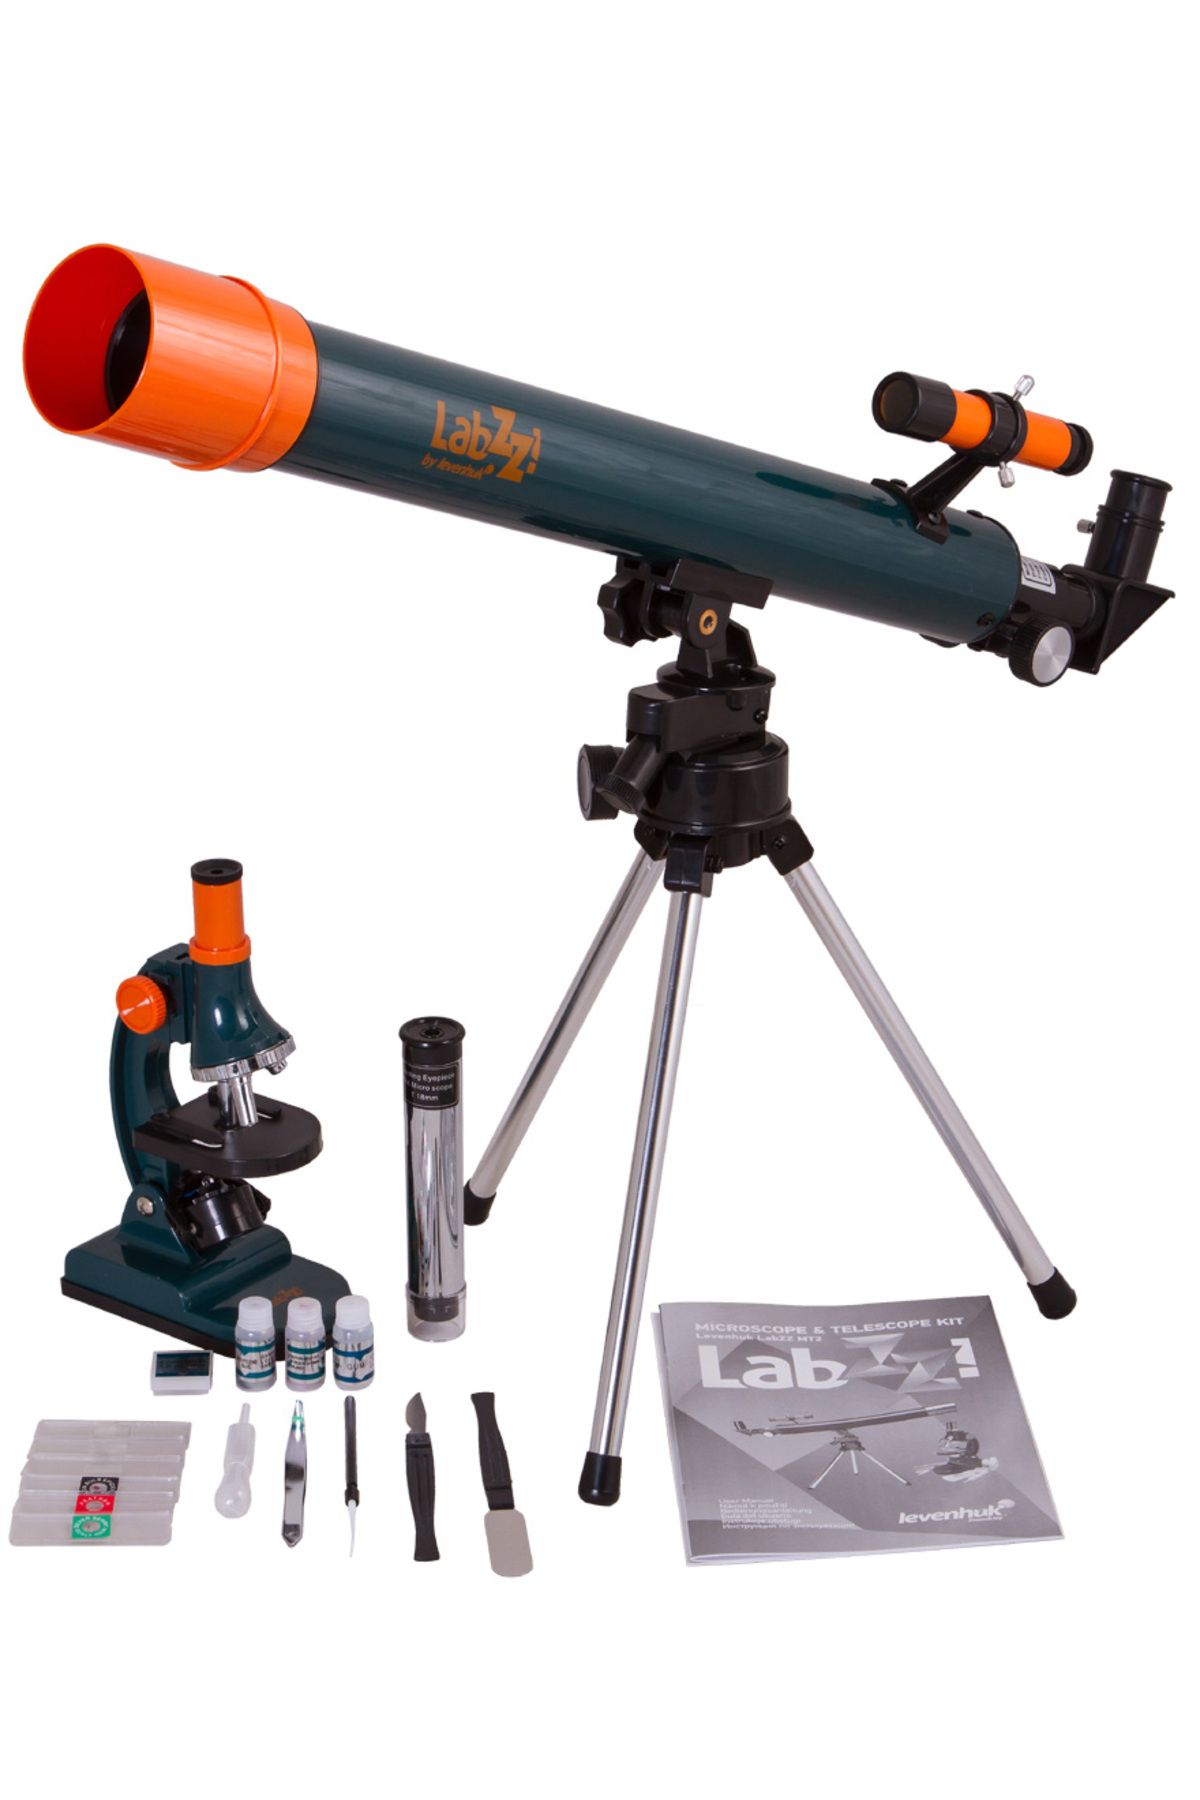 BOL ÇEŞİT BURADA Levenhuk LabZZ MT2 Mikroskop ve Teleskop Kiti (K0)